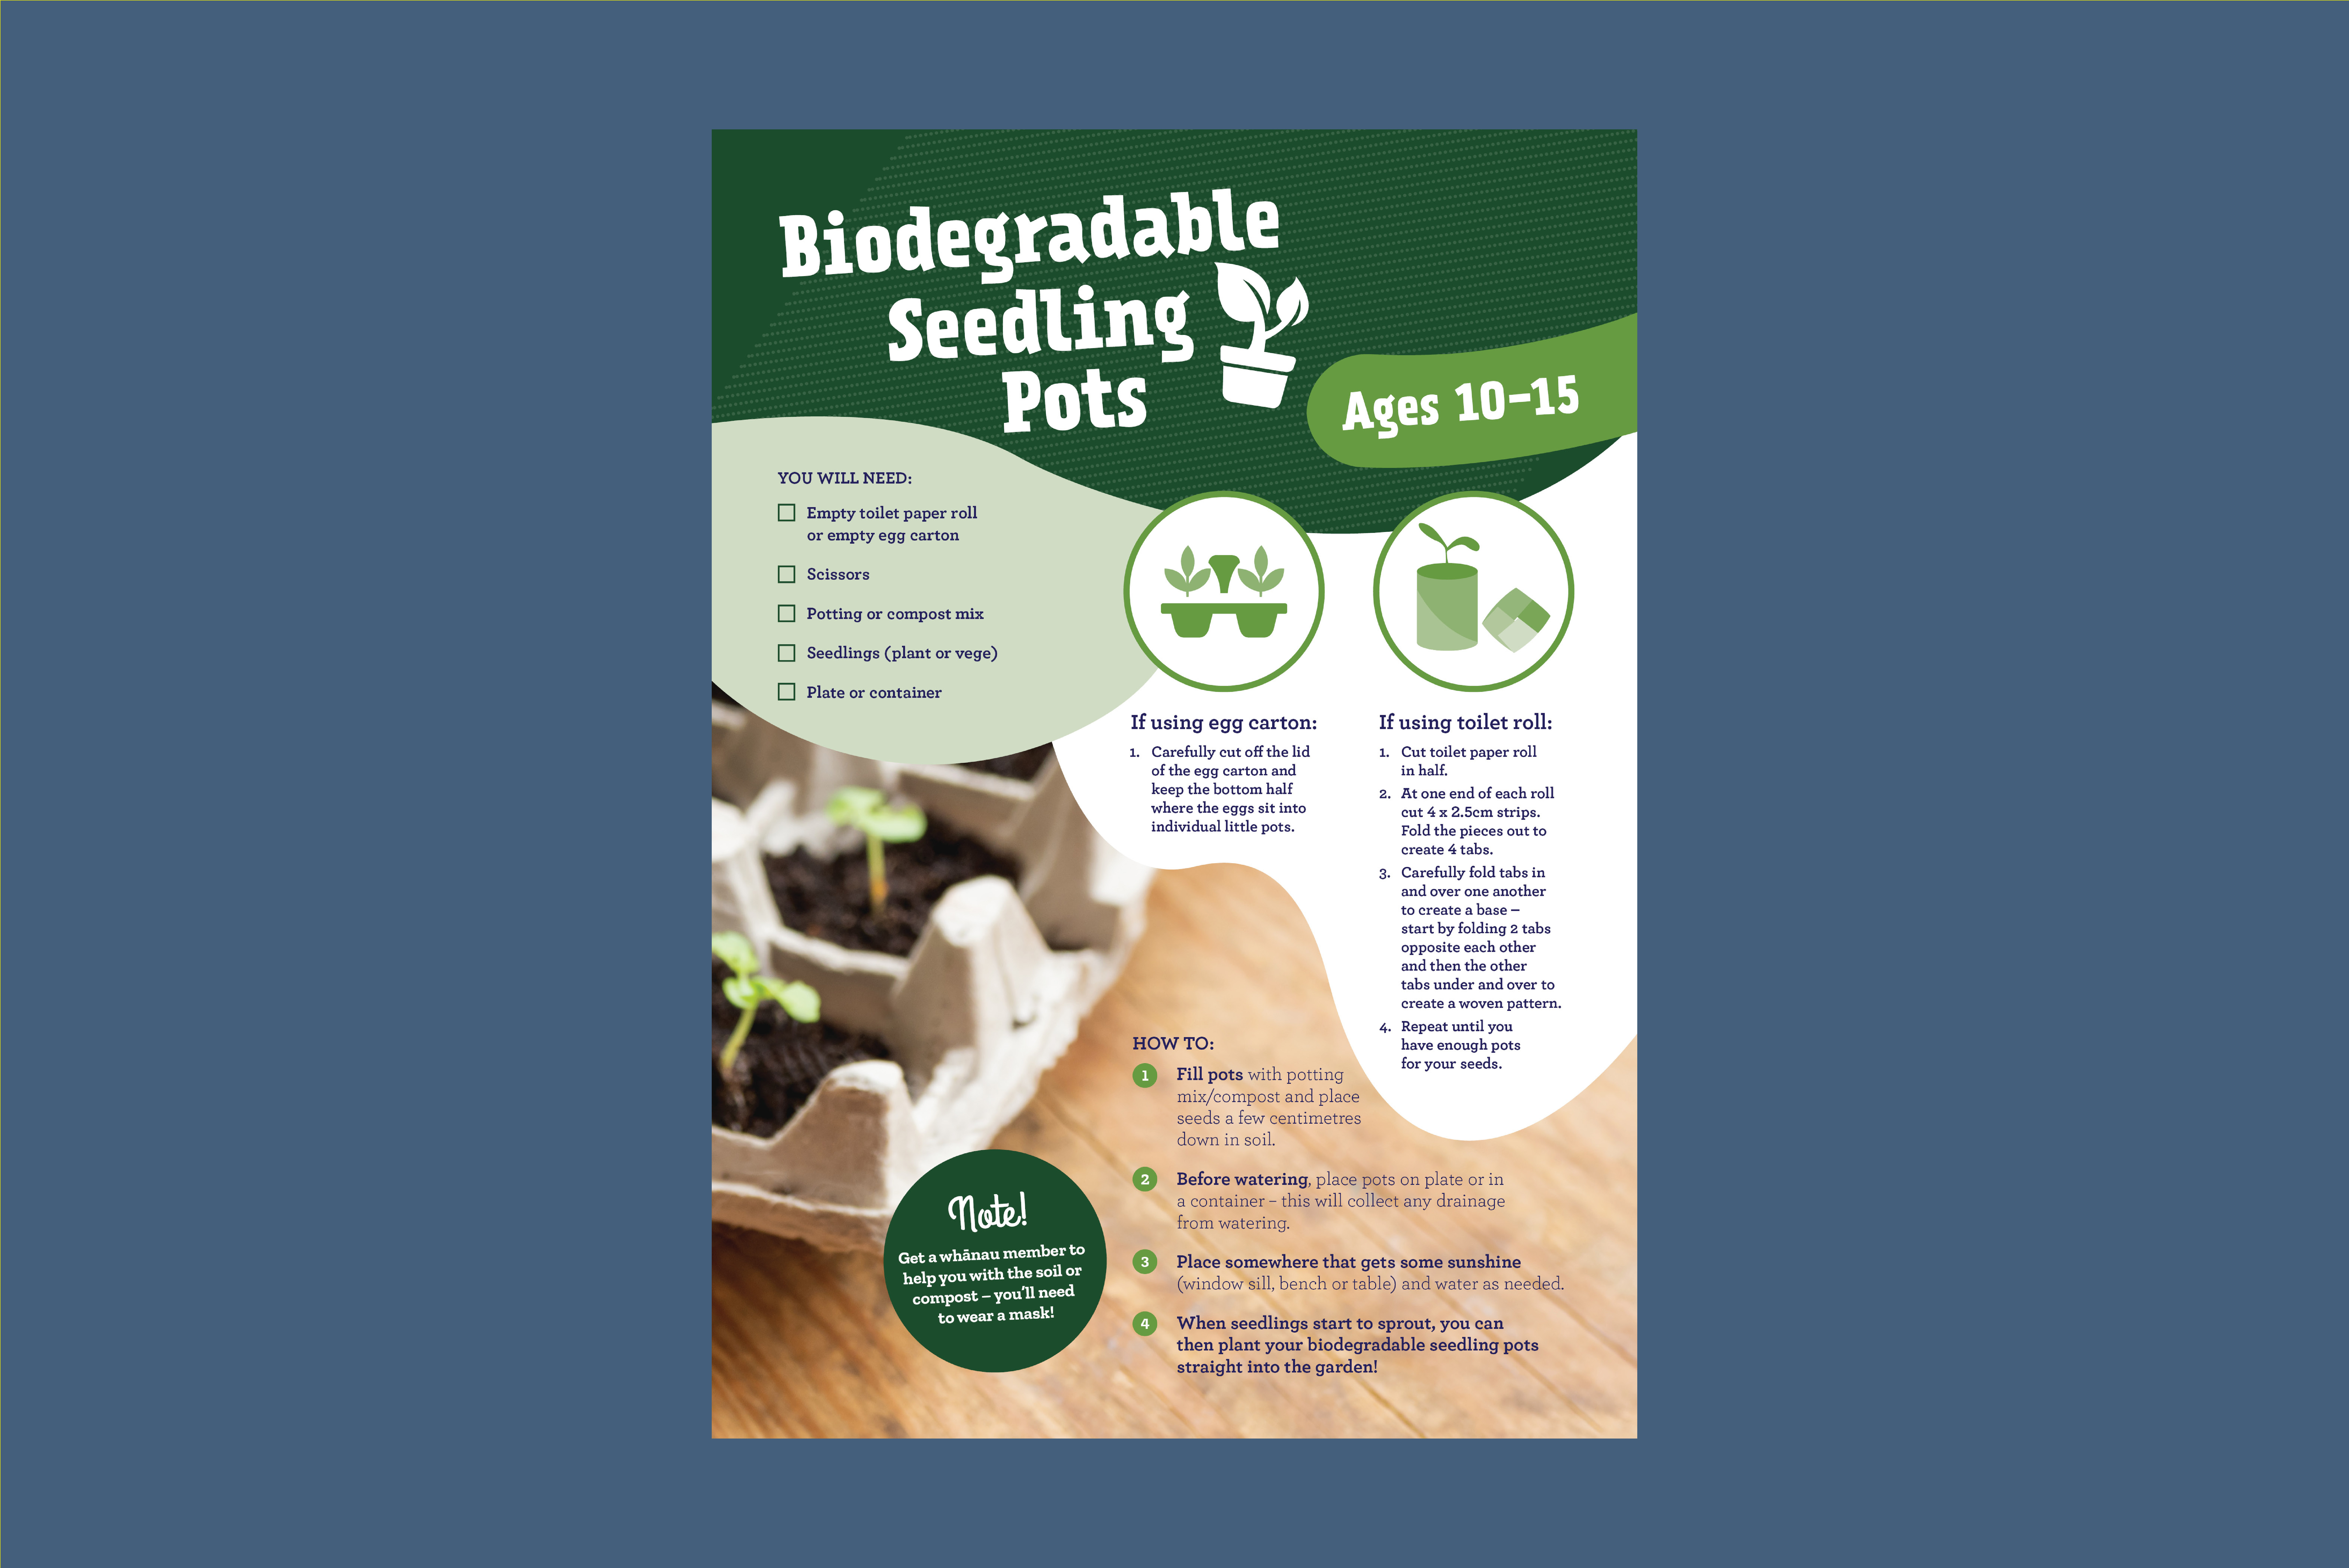 Biodegradable Seedling Pots